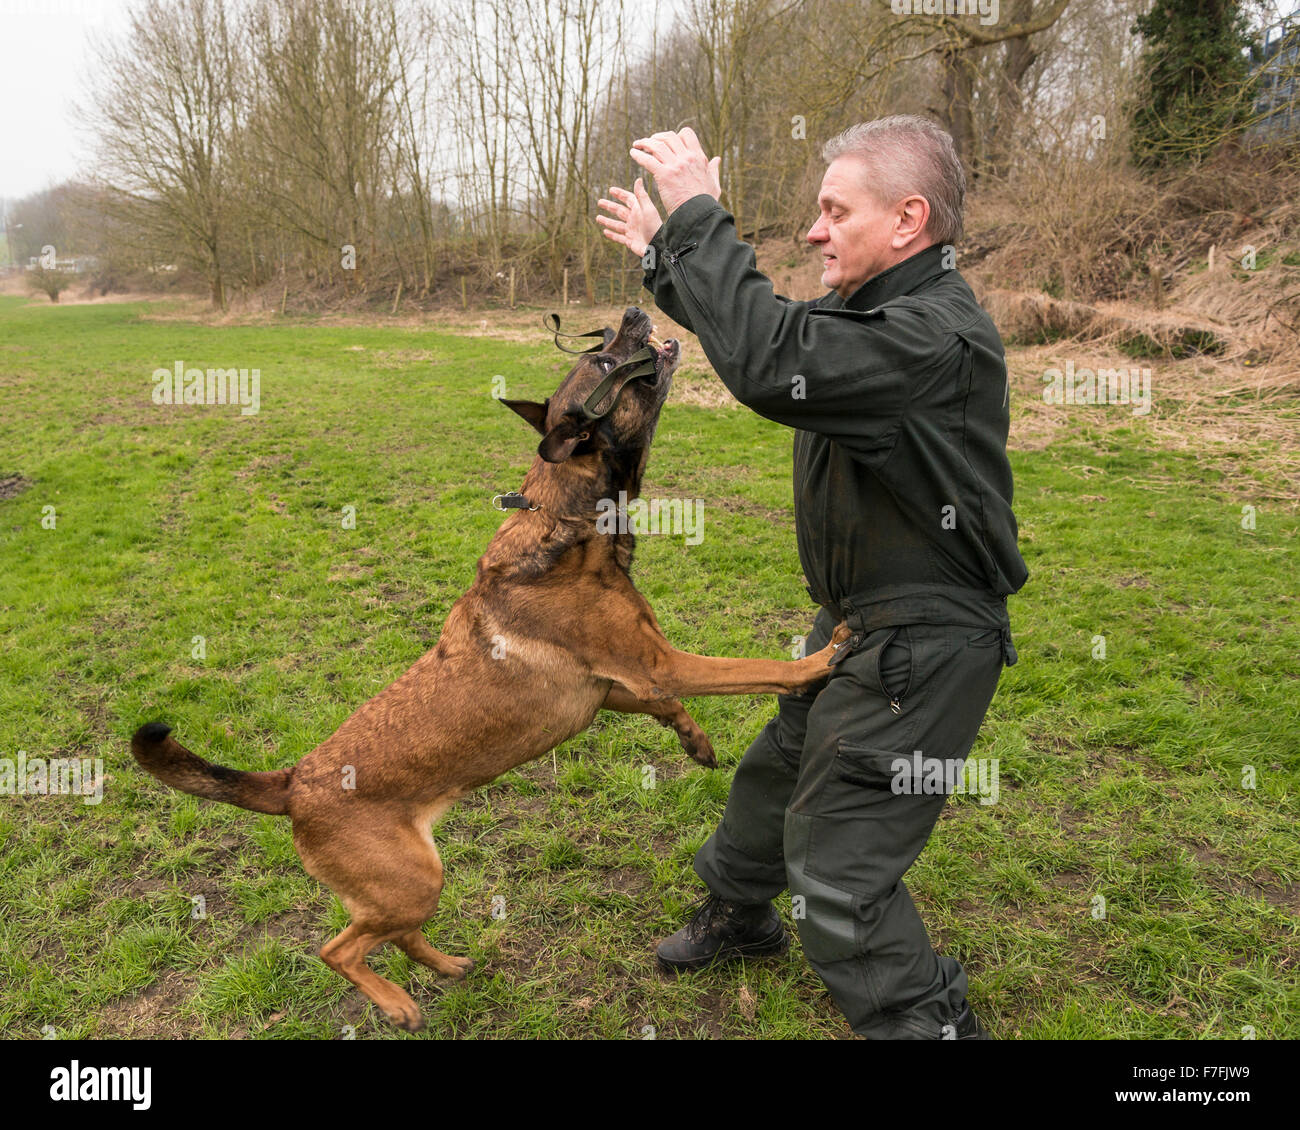 Eine Polizei-Inspektor trainiert seine Polizeihund, ein Mallinois Schäferhund. Stockfoto